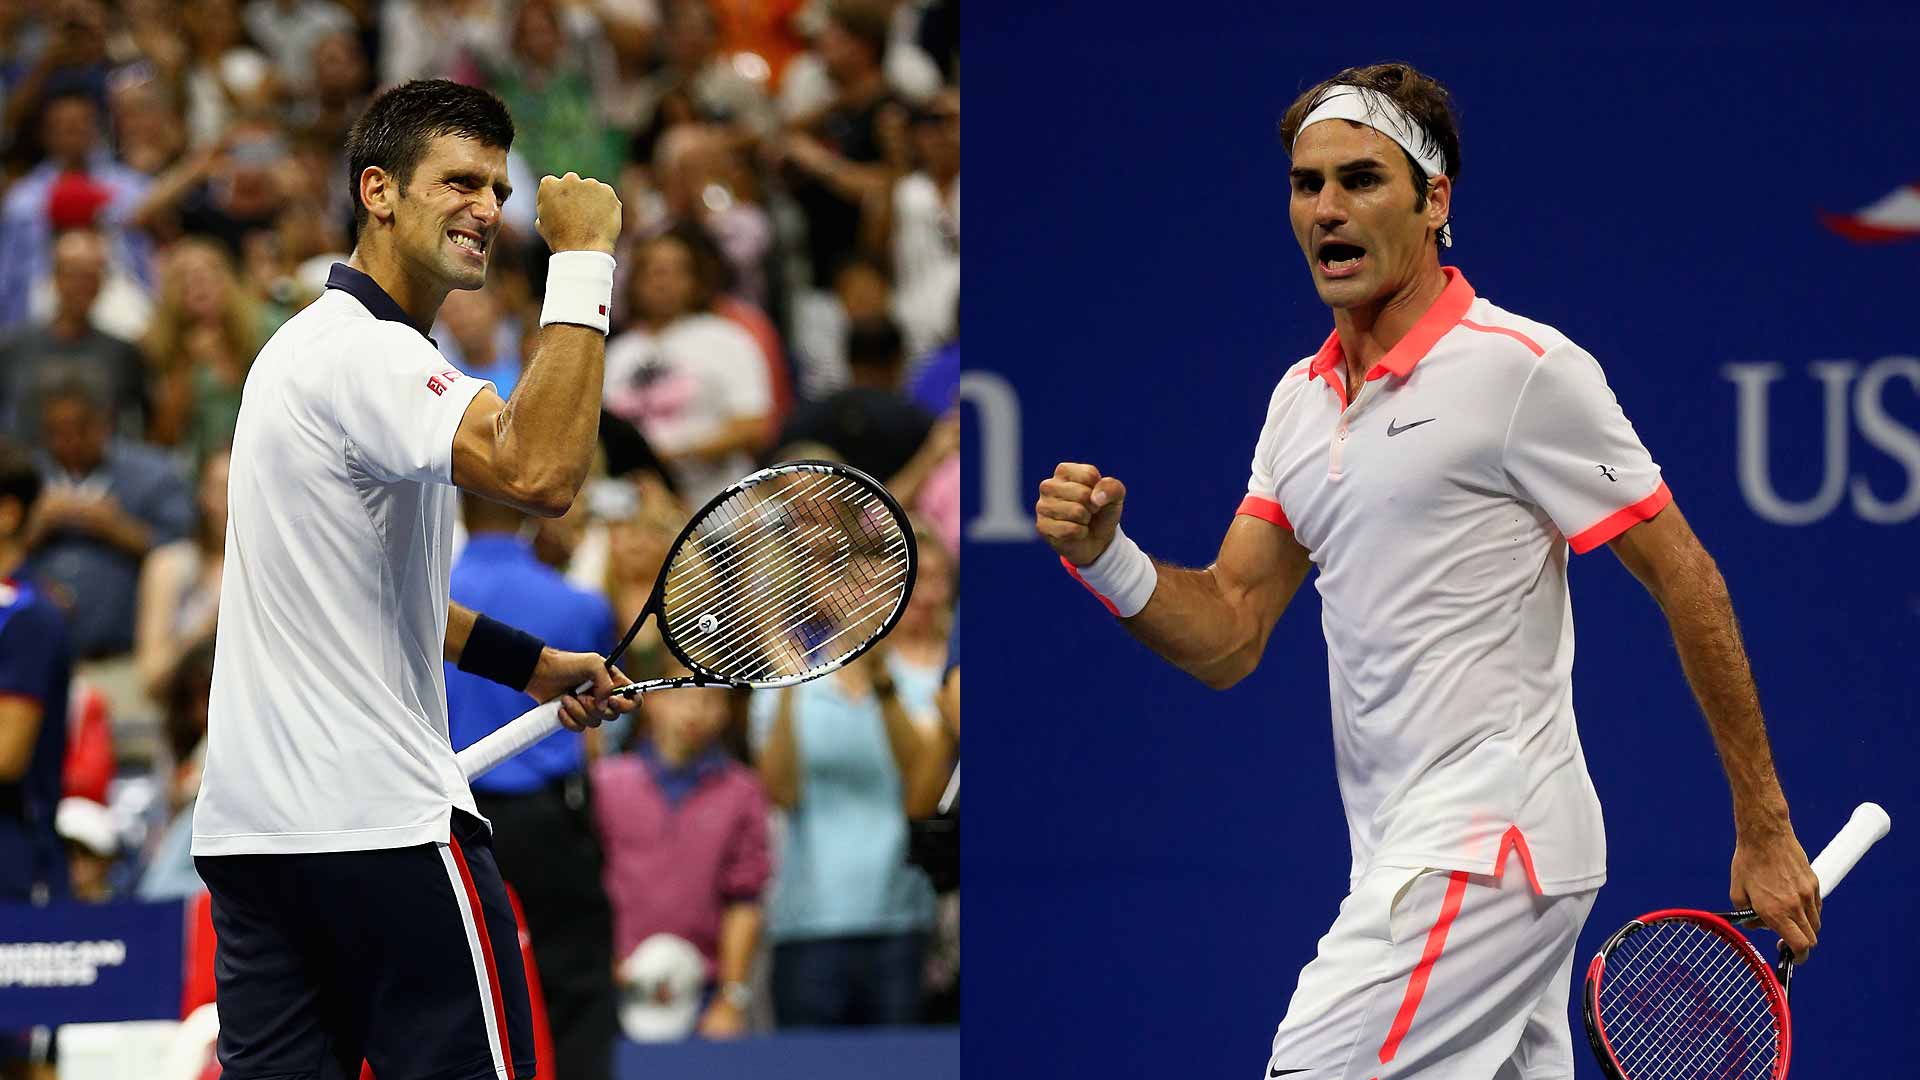 Previa de la final del domingo del US Open Djokovic y | ATP Tour | Tenis